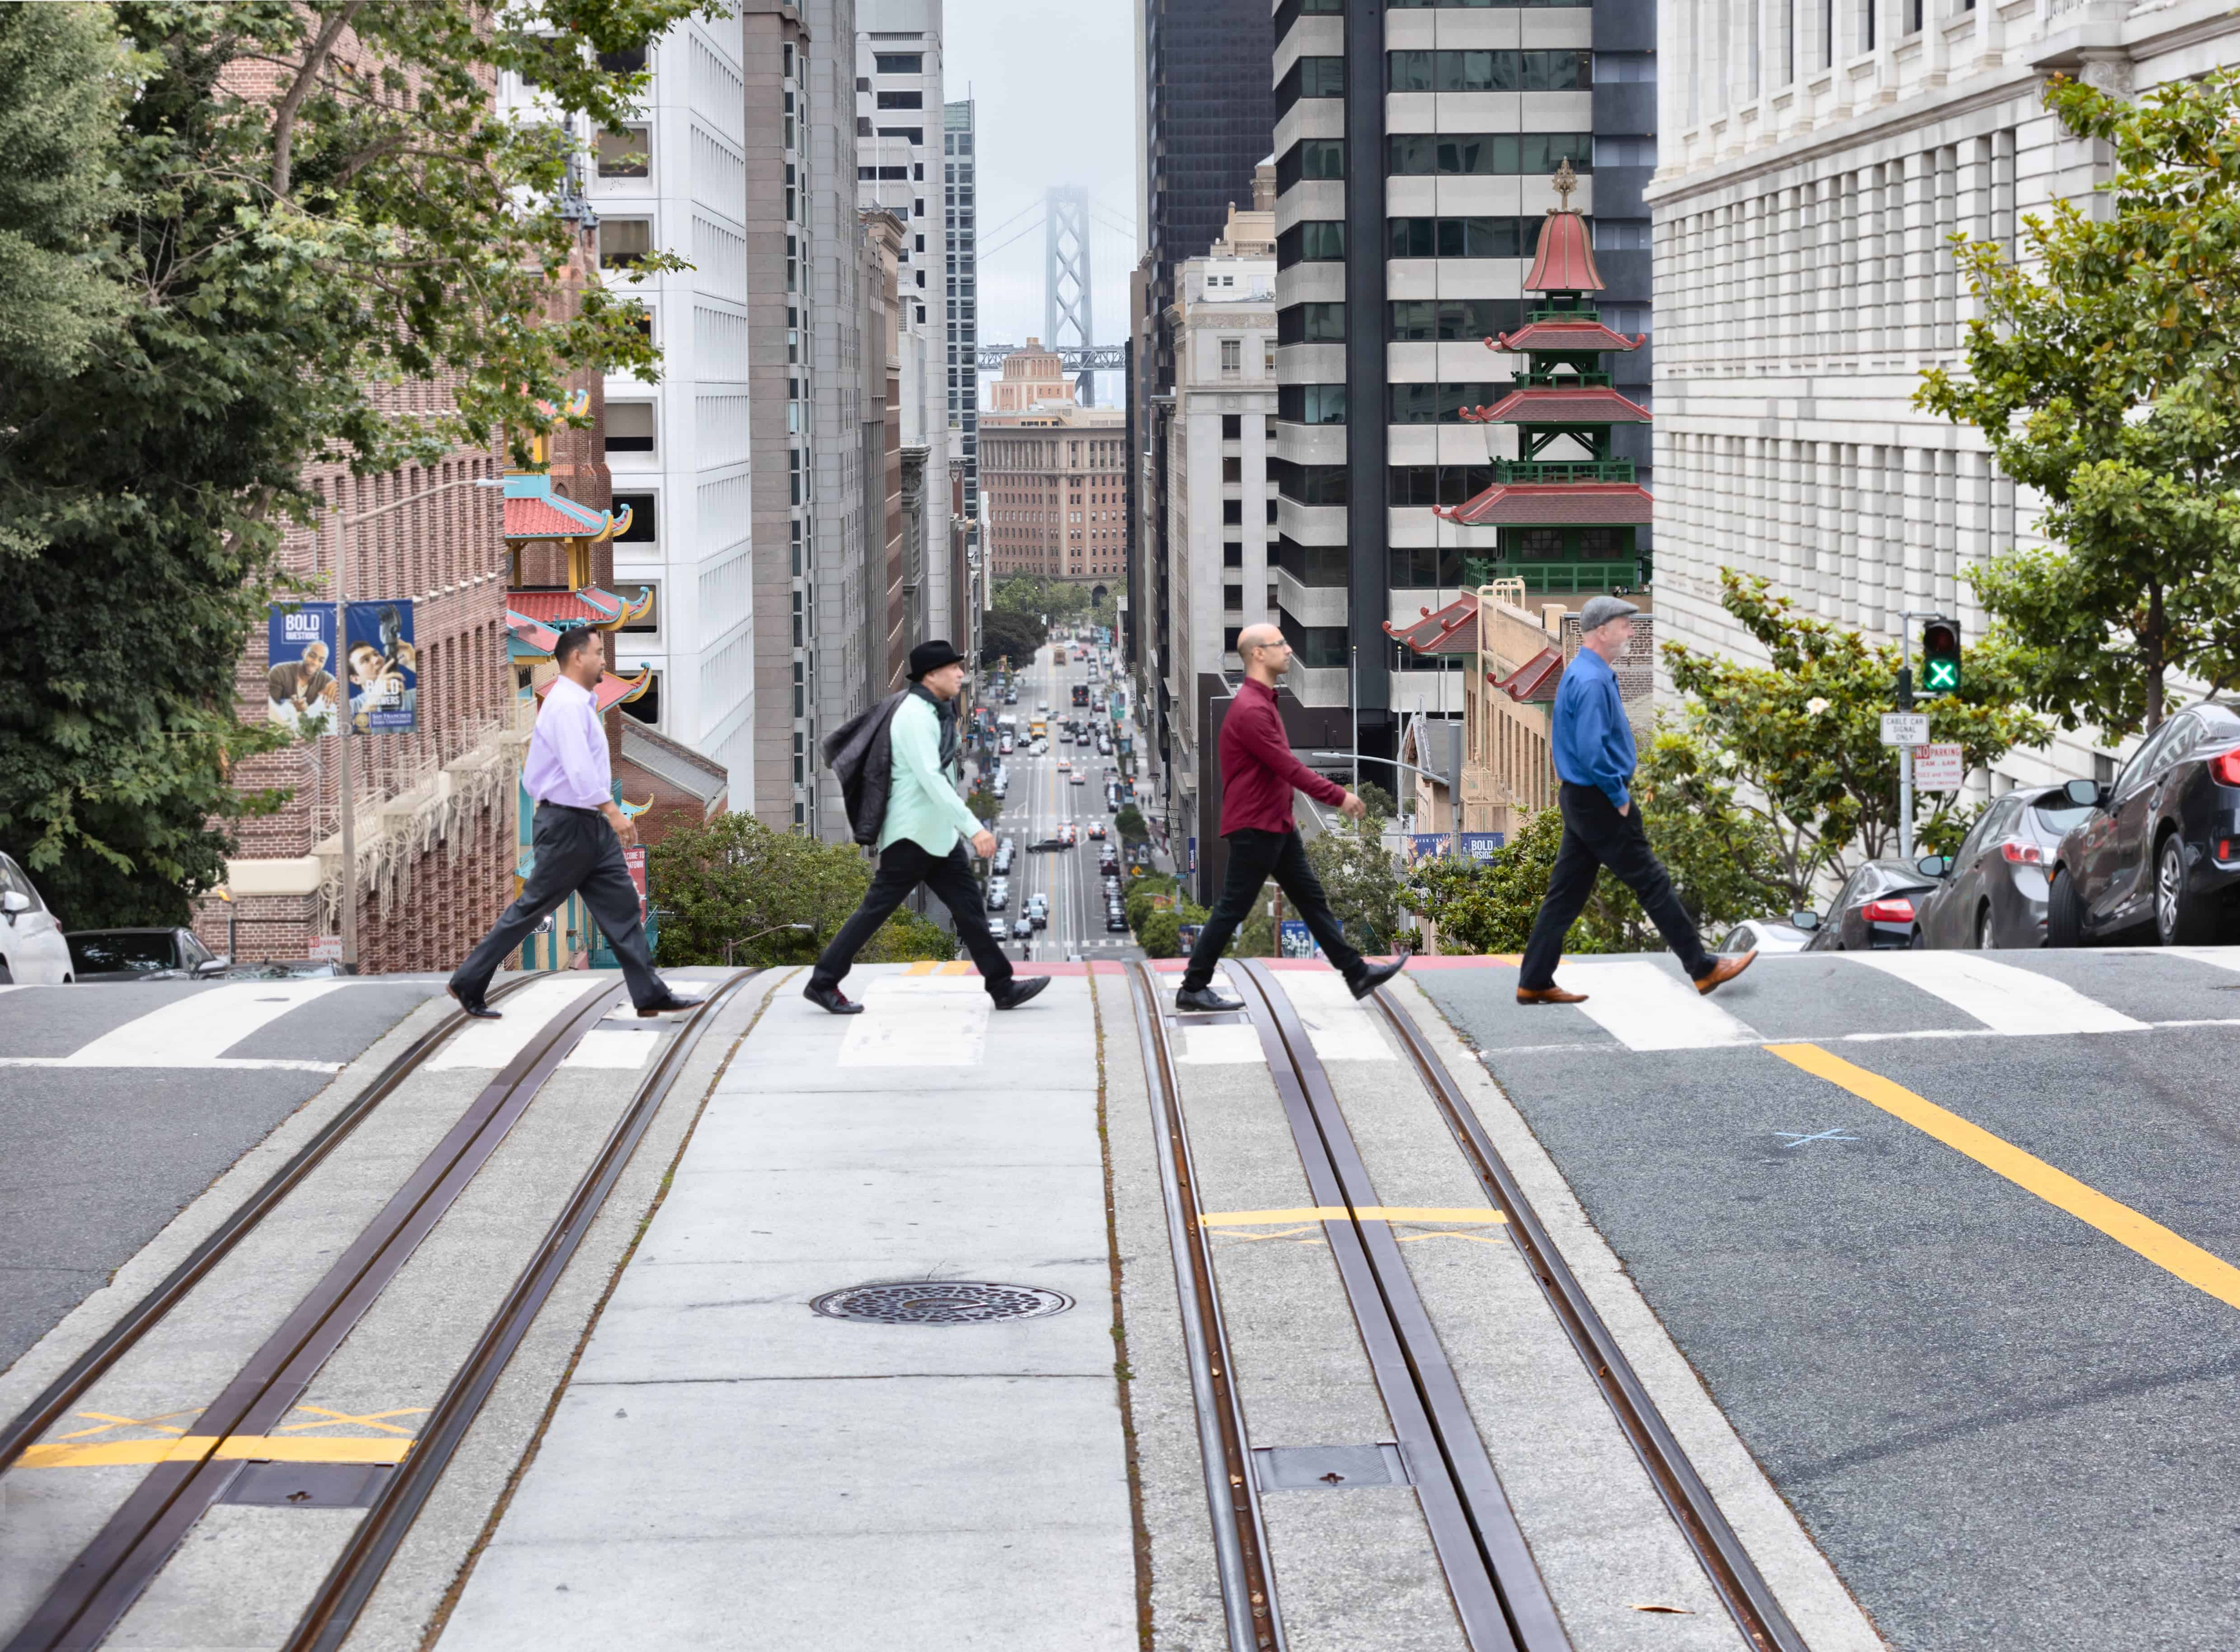 The Alexander String Quartet walking across a street in San Francisco - Abbey Road style on Crosswalk